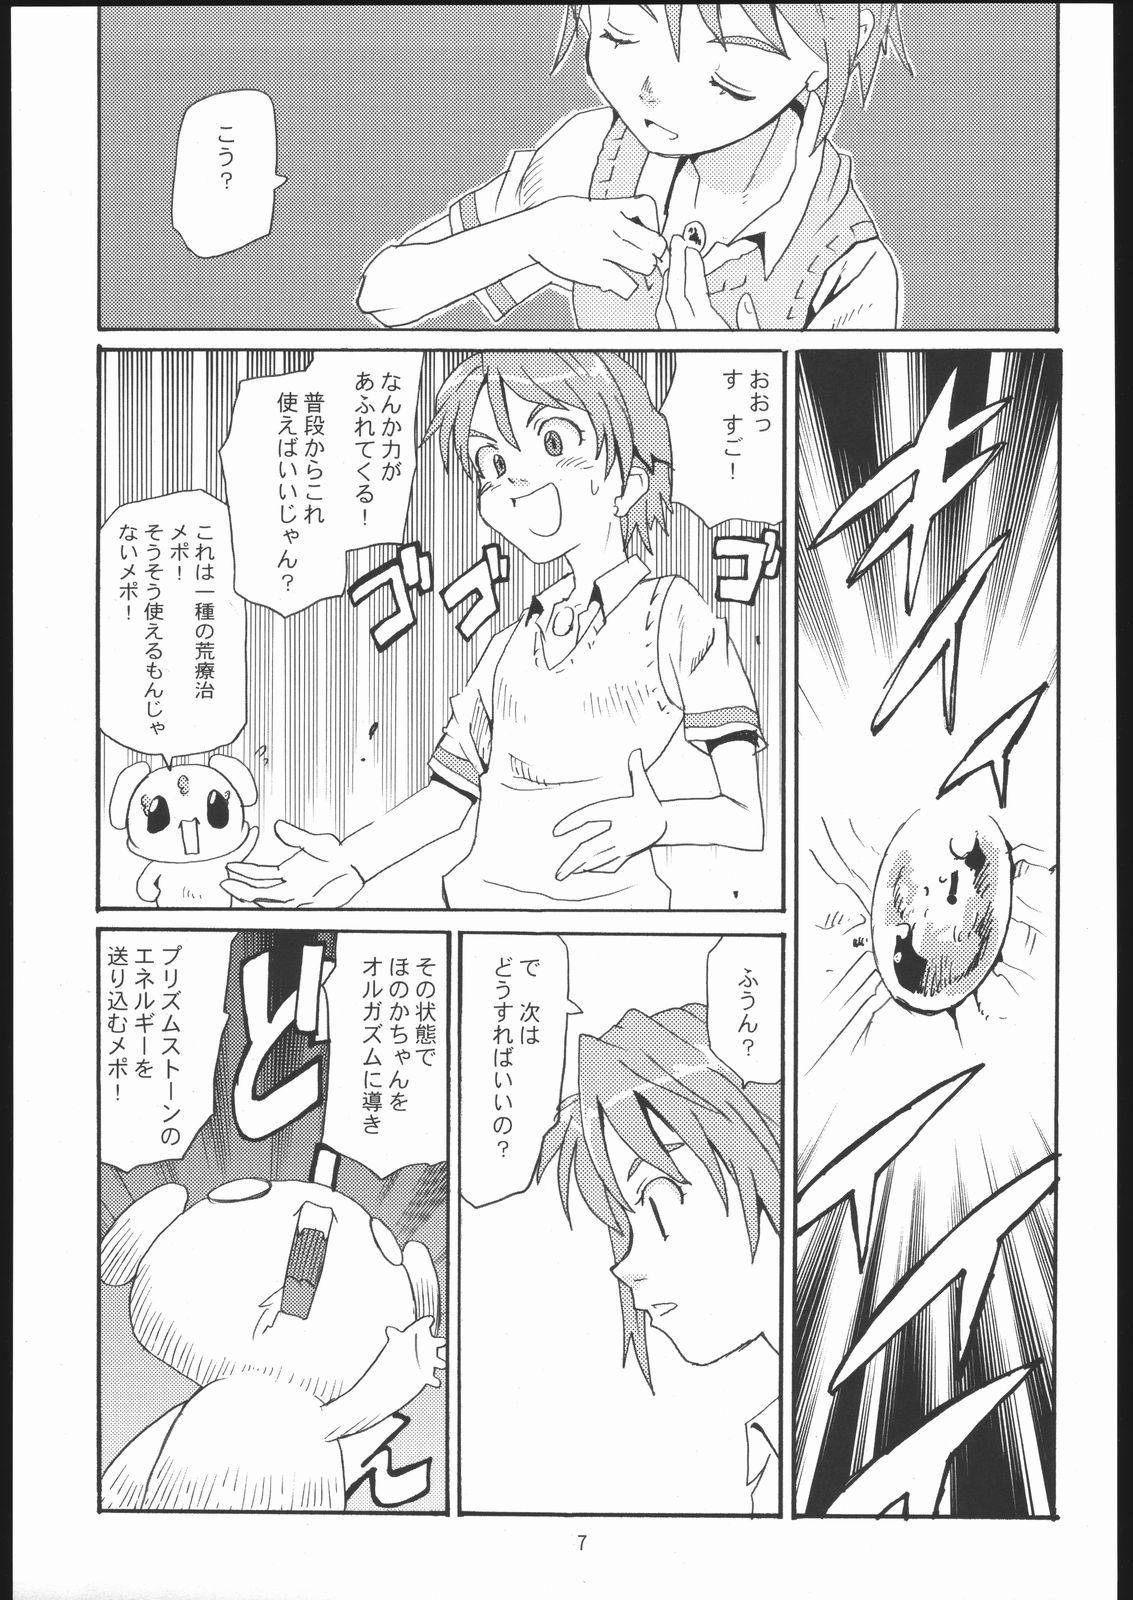 Monstercock Cure Cure - Futari wa pretty cure | futari wa precure Hand - Page 6